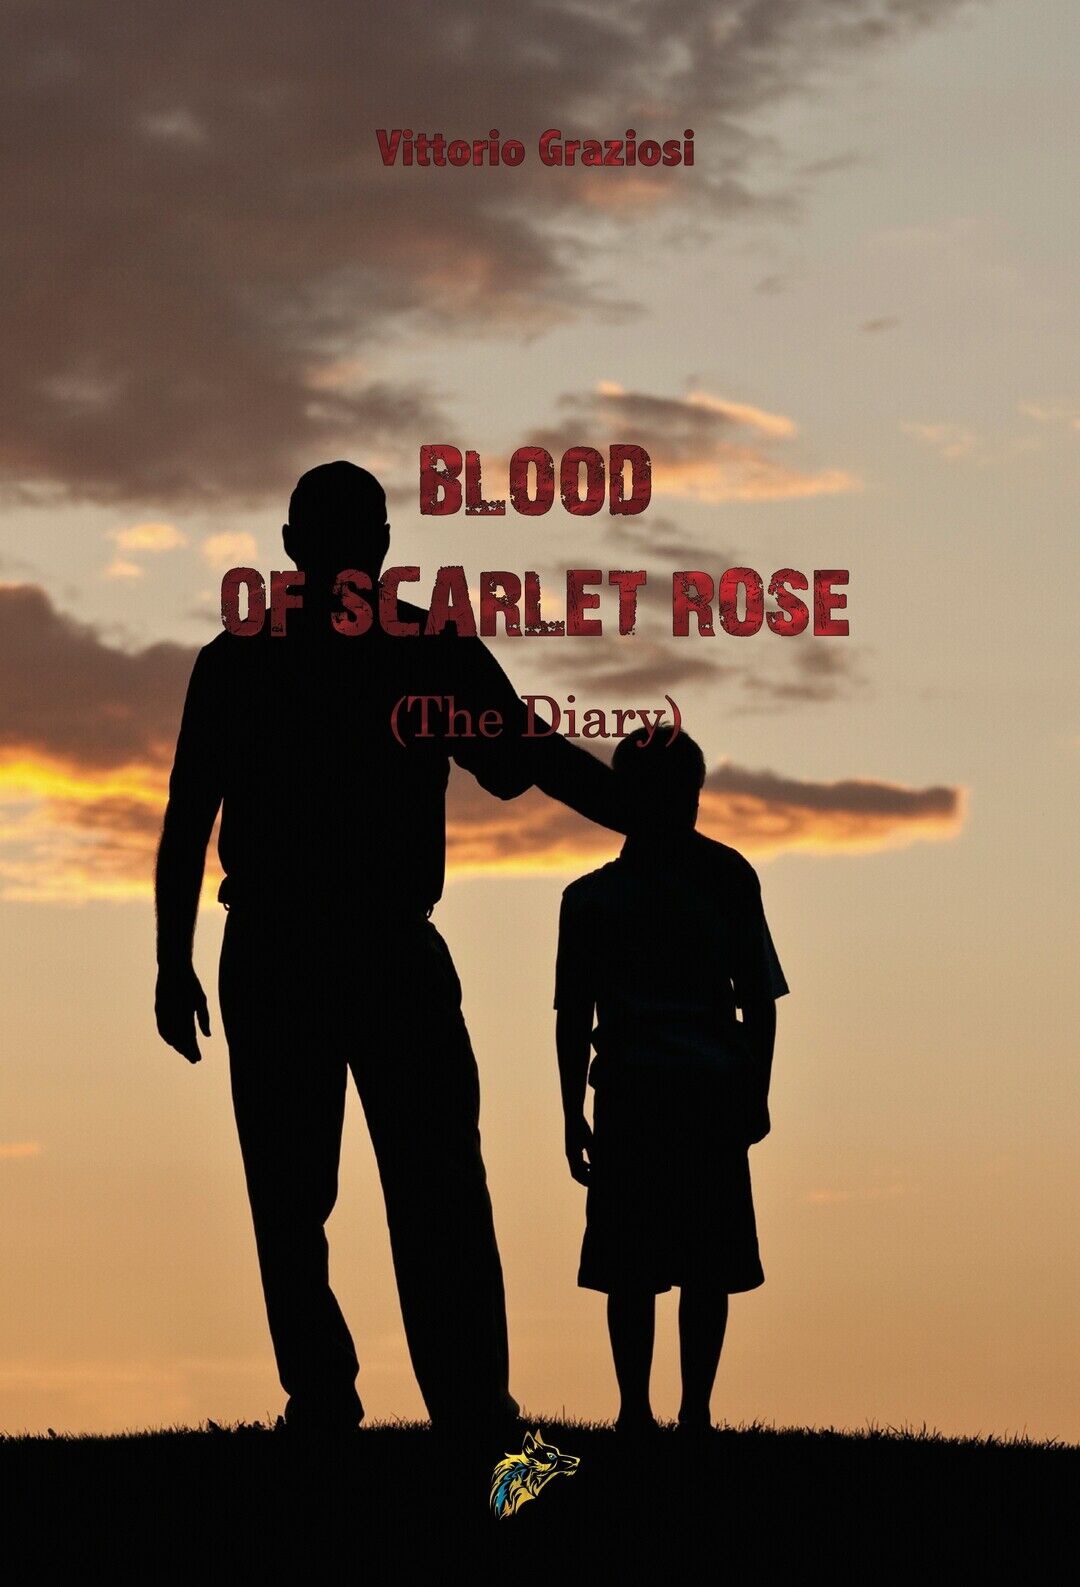 Blood of scarlet rose (The Diary)  di Vittorio Graziosi,  2020,  Black Wolf Ed. libro usato